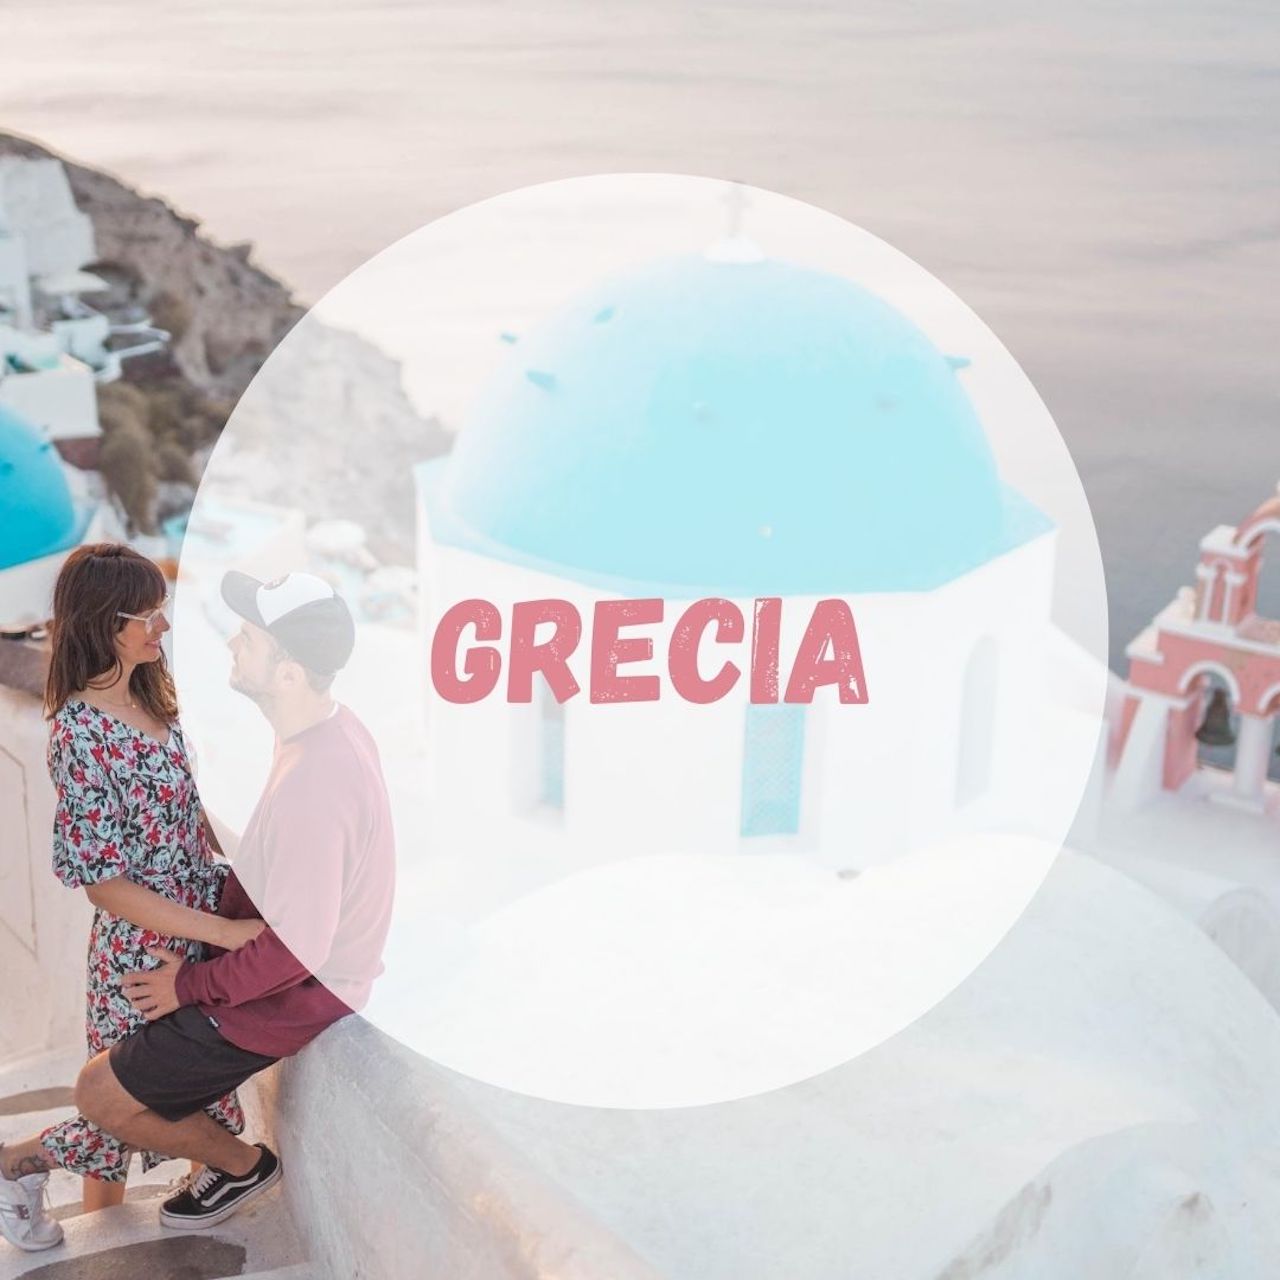 Portada para los posts de los viajes a Grecia